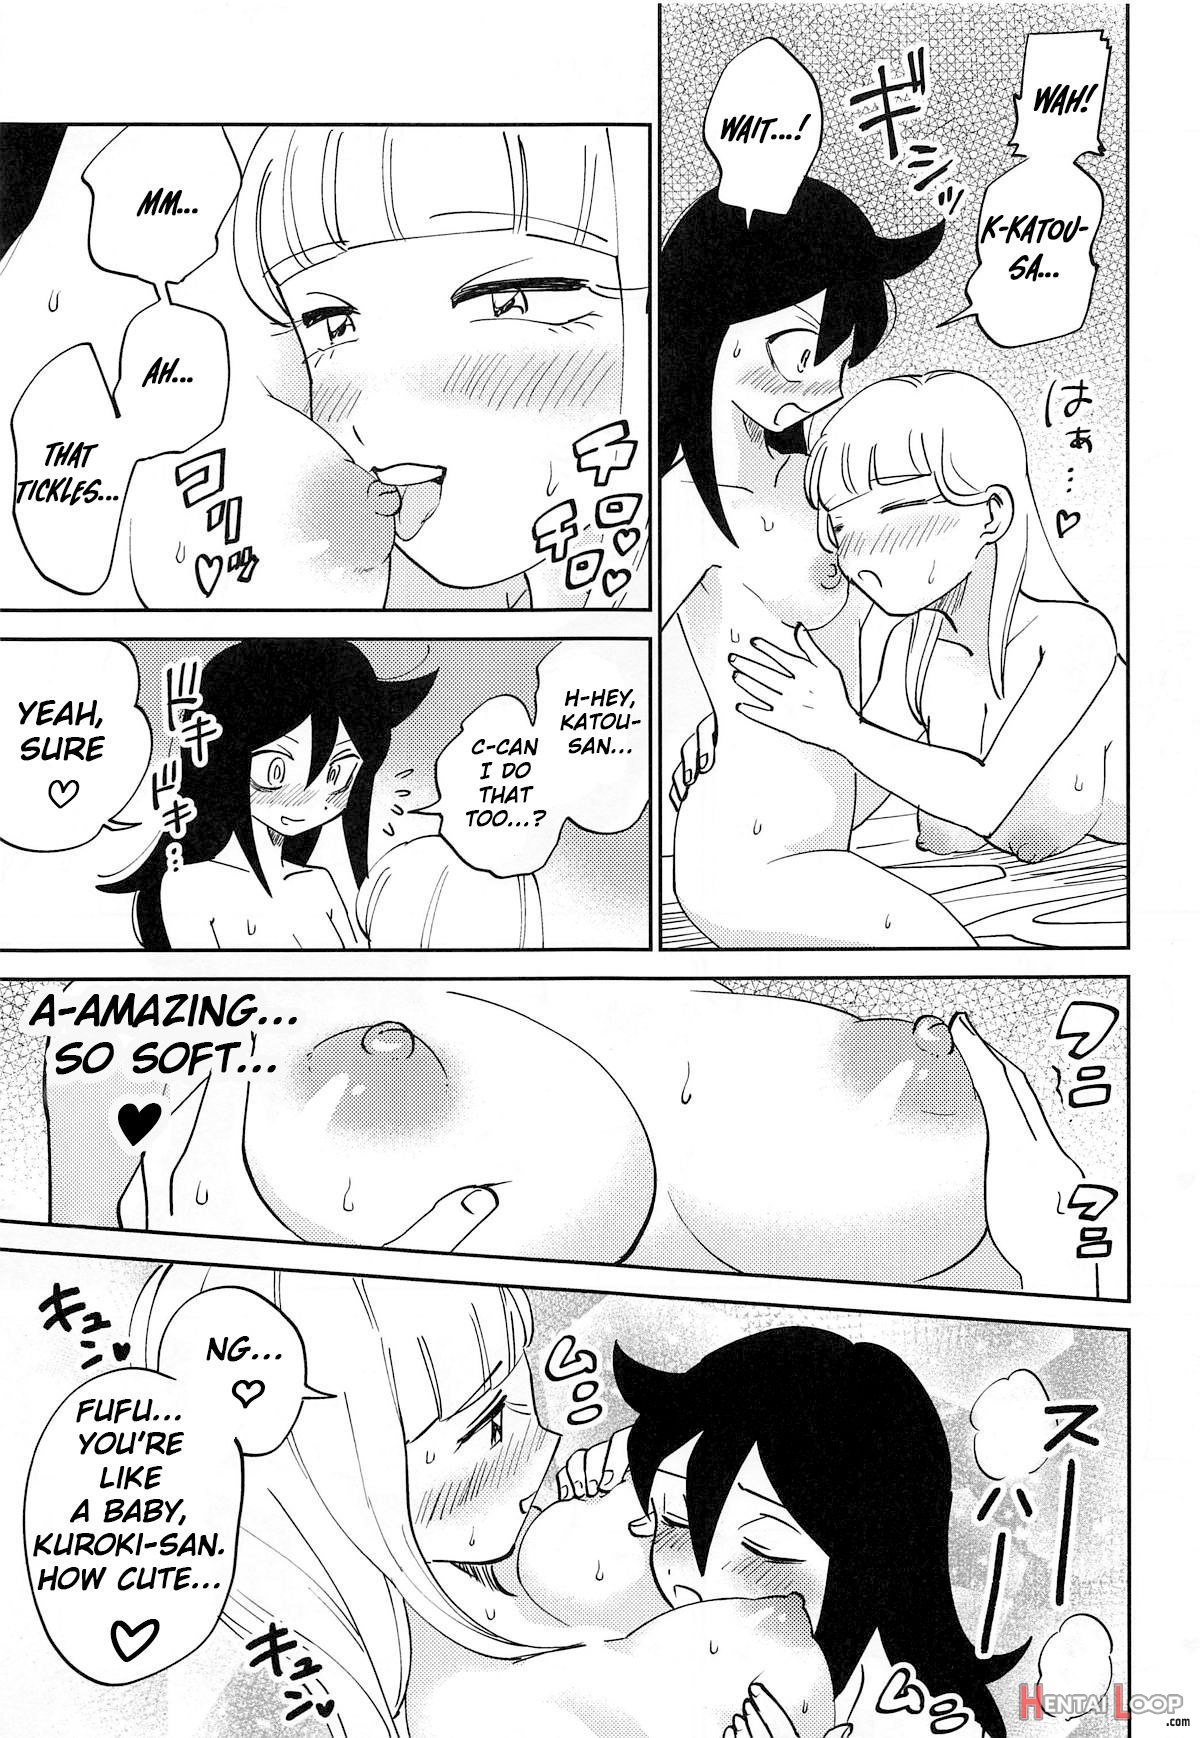 Kuroki-san, Anone. page 21